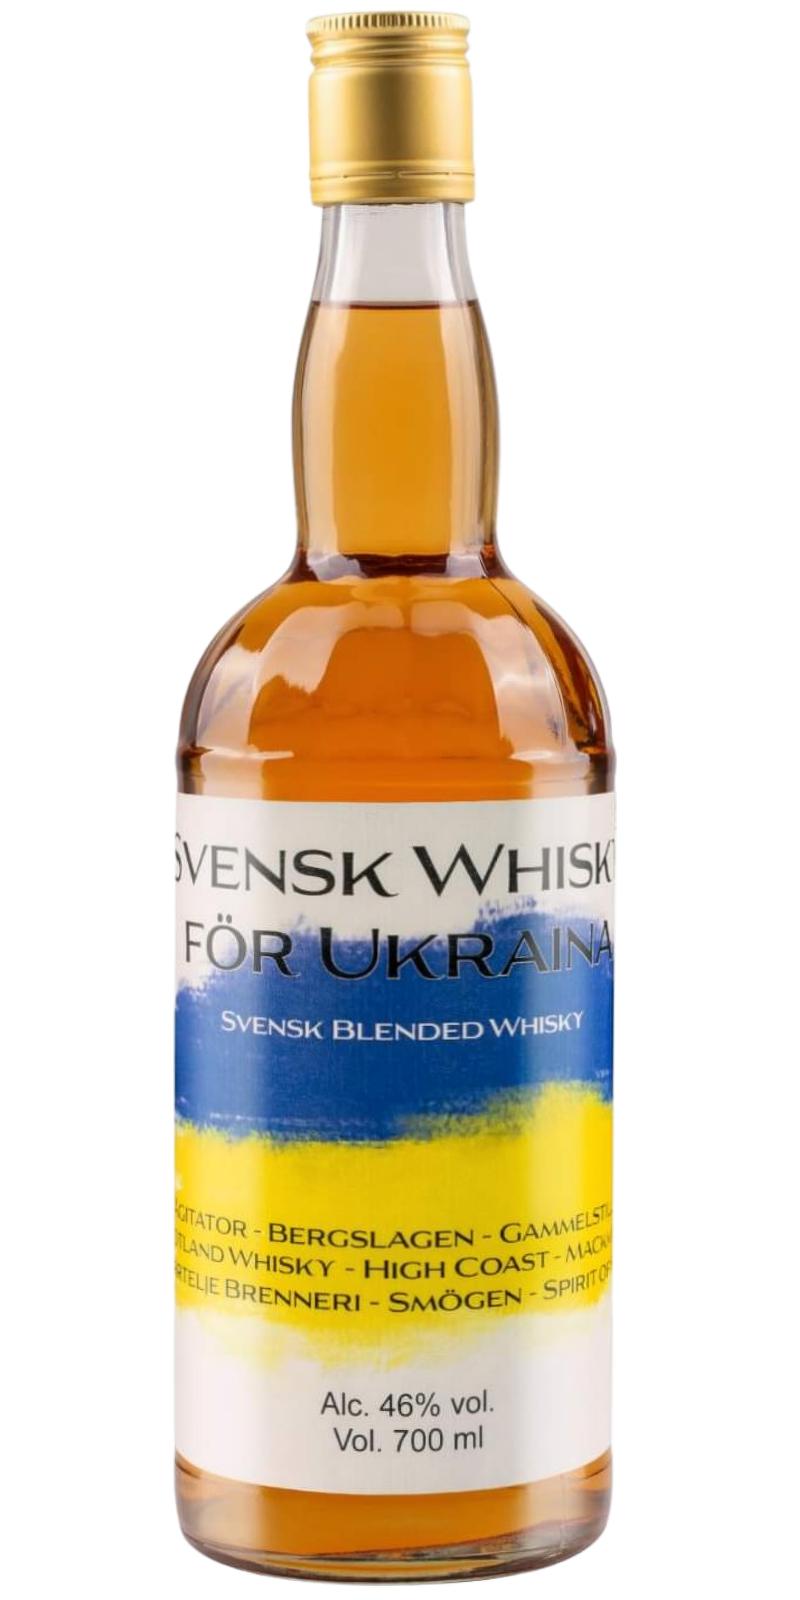 Svensk whisky for Ukraina Svensk Blended Whisky 46% 700ml